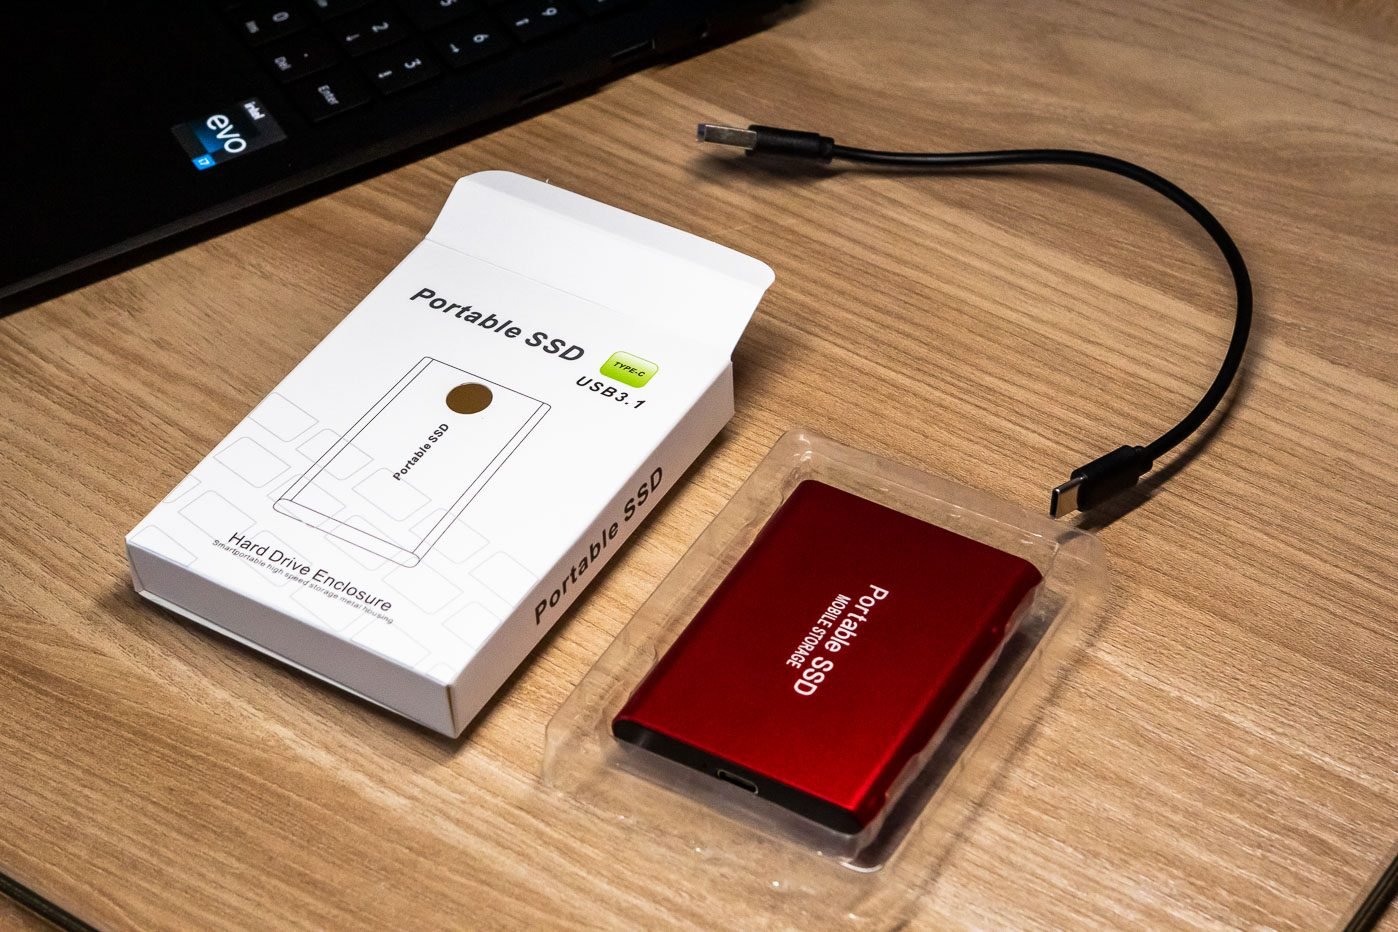 Test du SSD portable SanDisk Extreme Pro : le stockage externe rapide et  pratique - CNET France